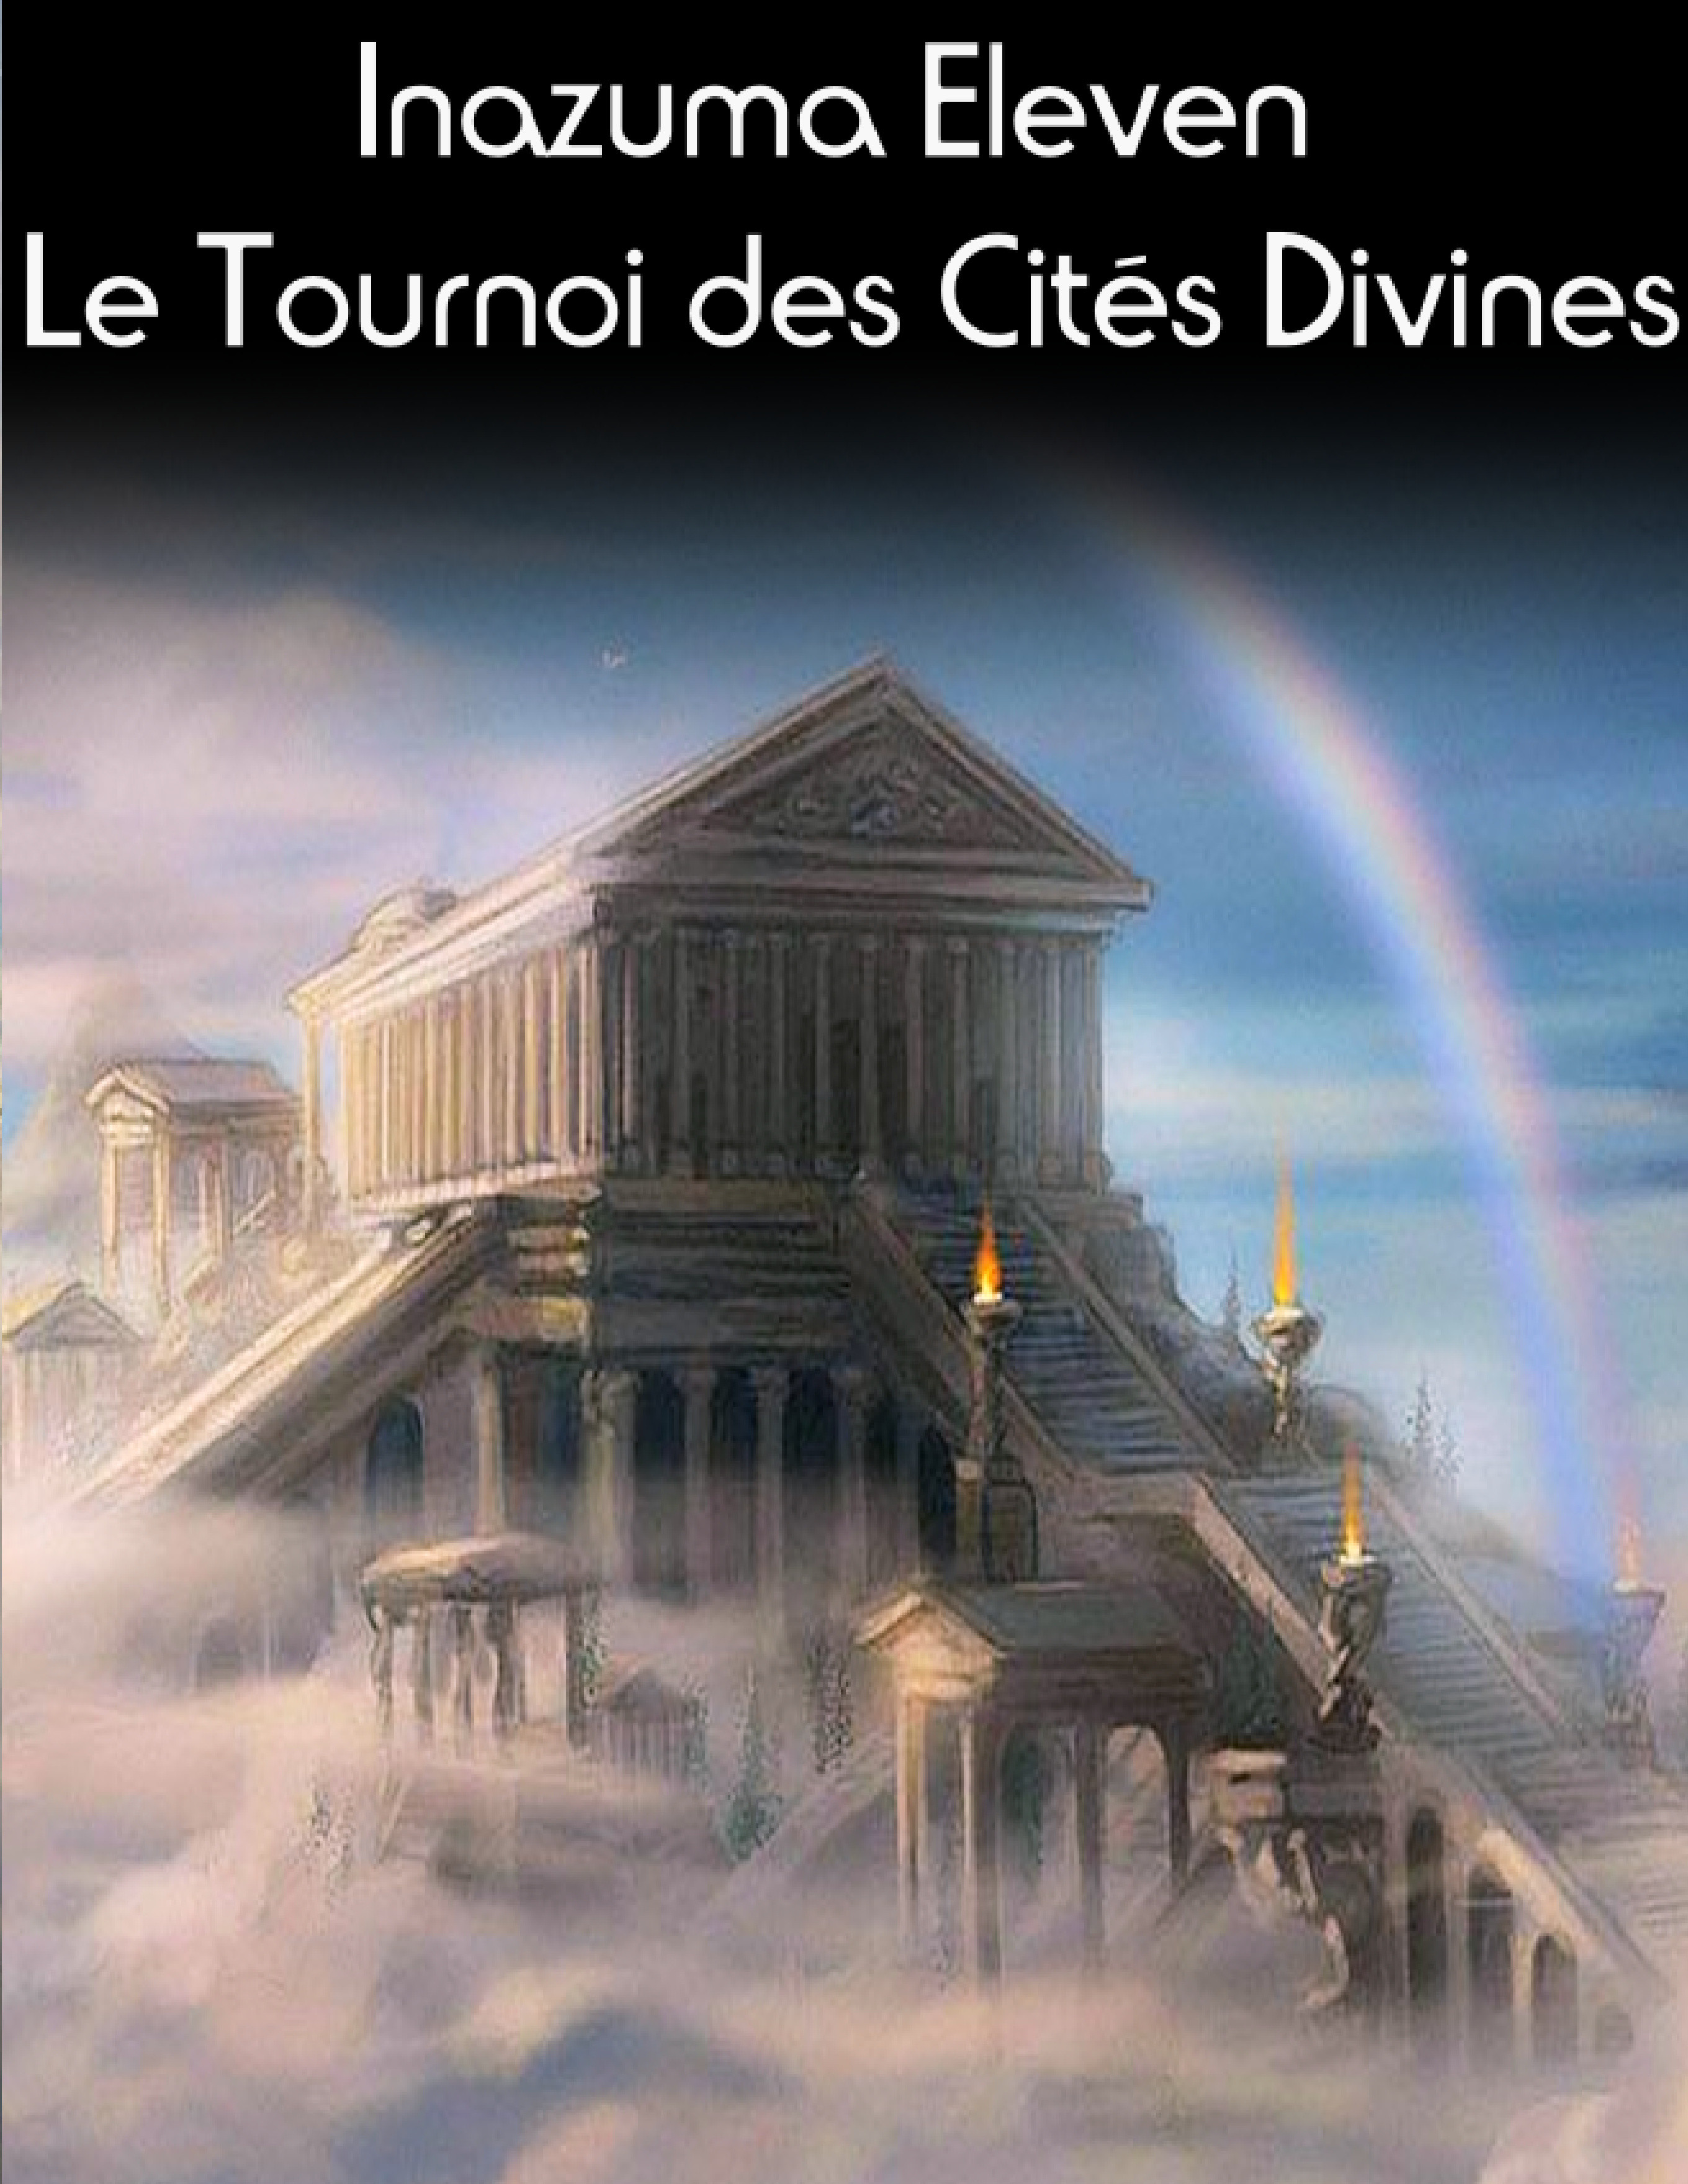 [Fanfic] Inazuma Eleven - Le Tournoi des Cités Divines